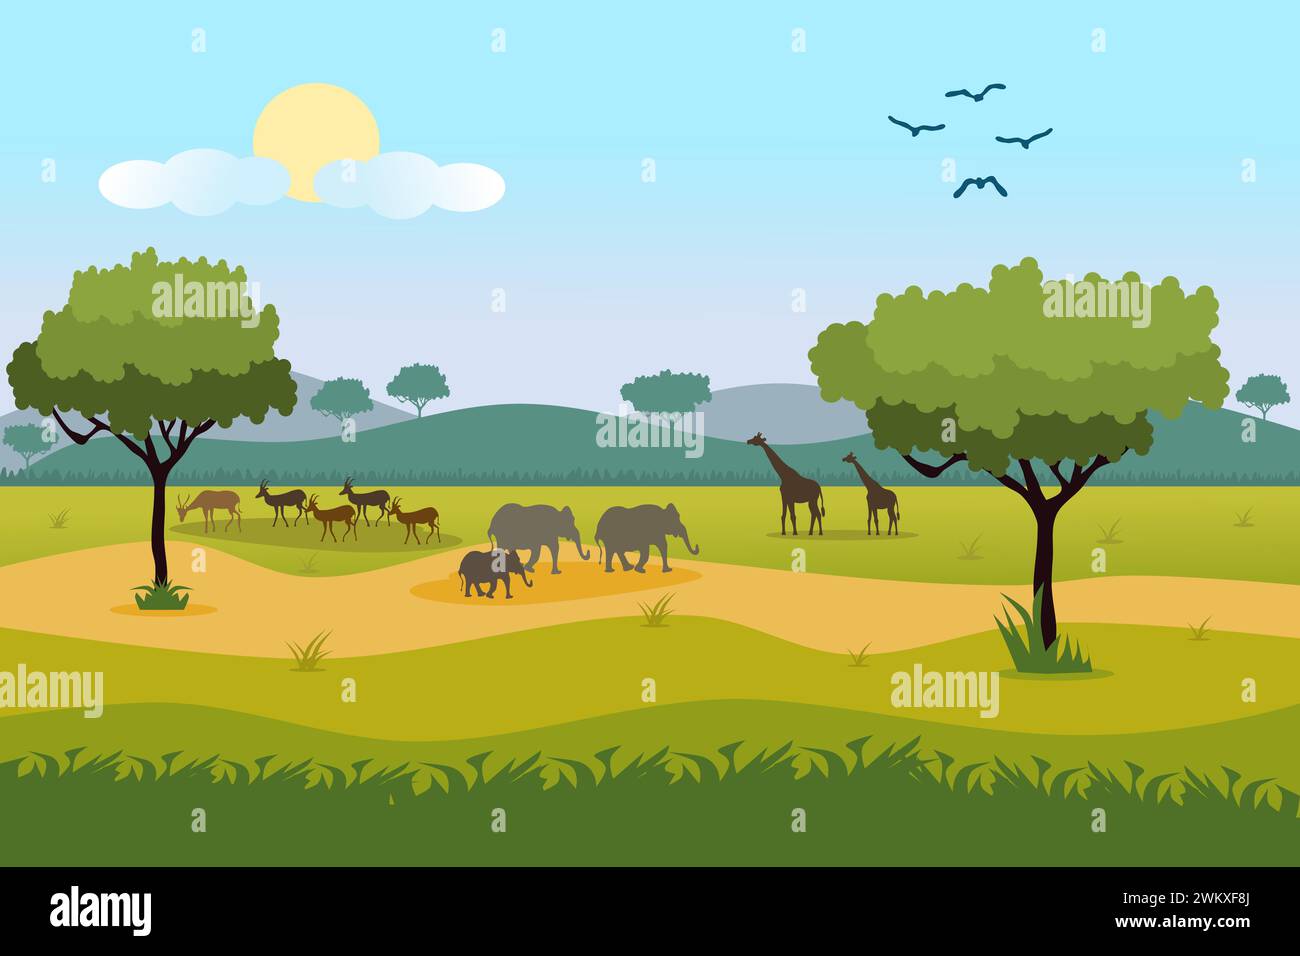 Illustration de paysage de forêt de savane africaine avec girafe, cerf, éléphant et oiseau. Illustration de Vecteur